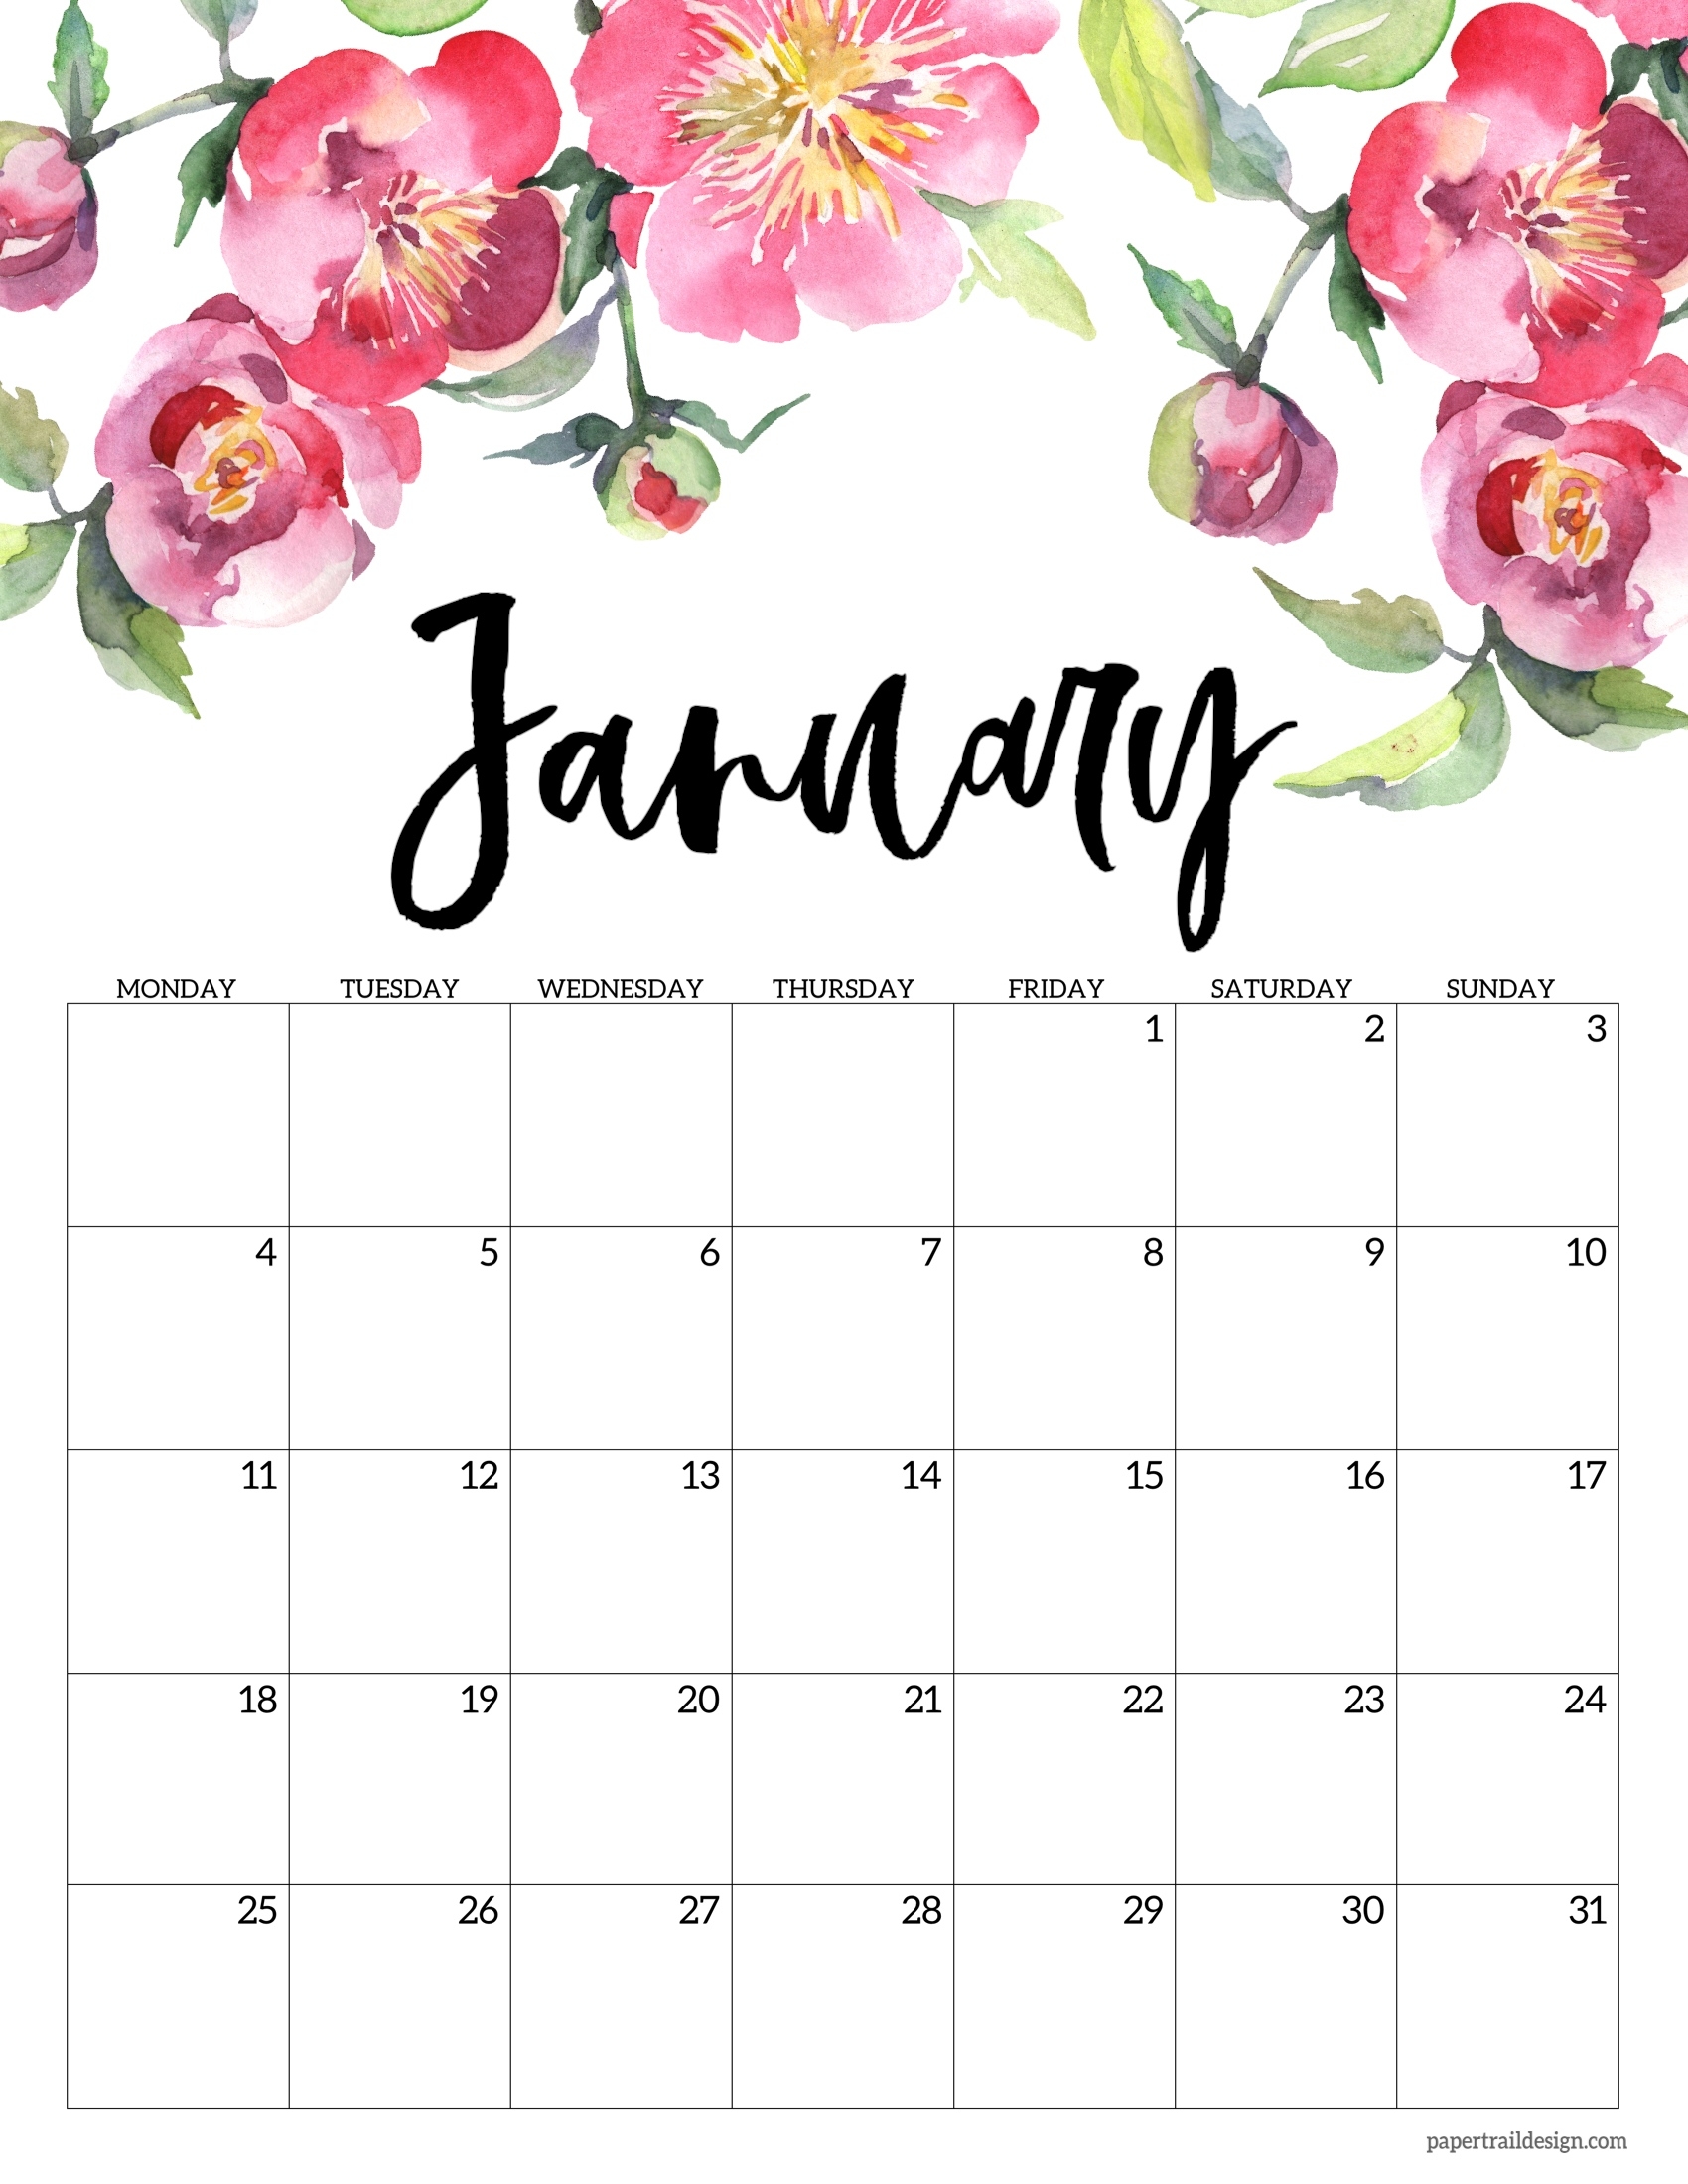 Free Printable 2021 Floral Calendar - Monday Start | Paper Trail Design December 2021 Calendar Floral